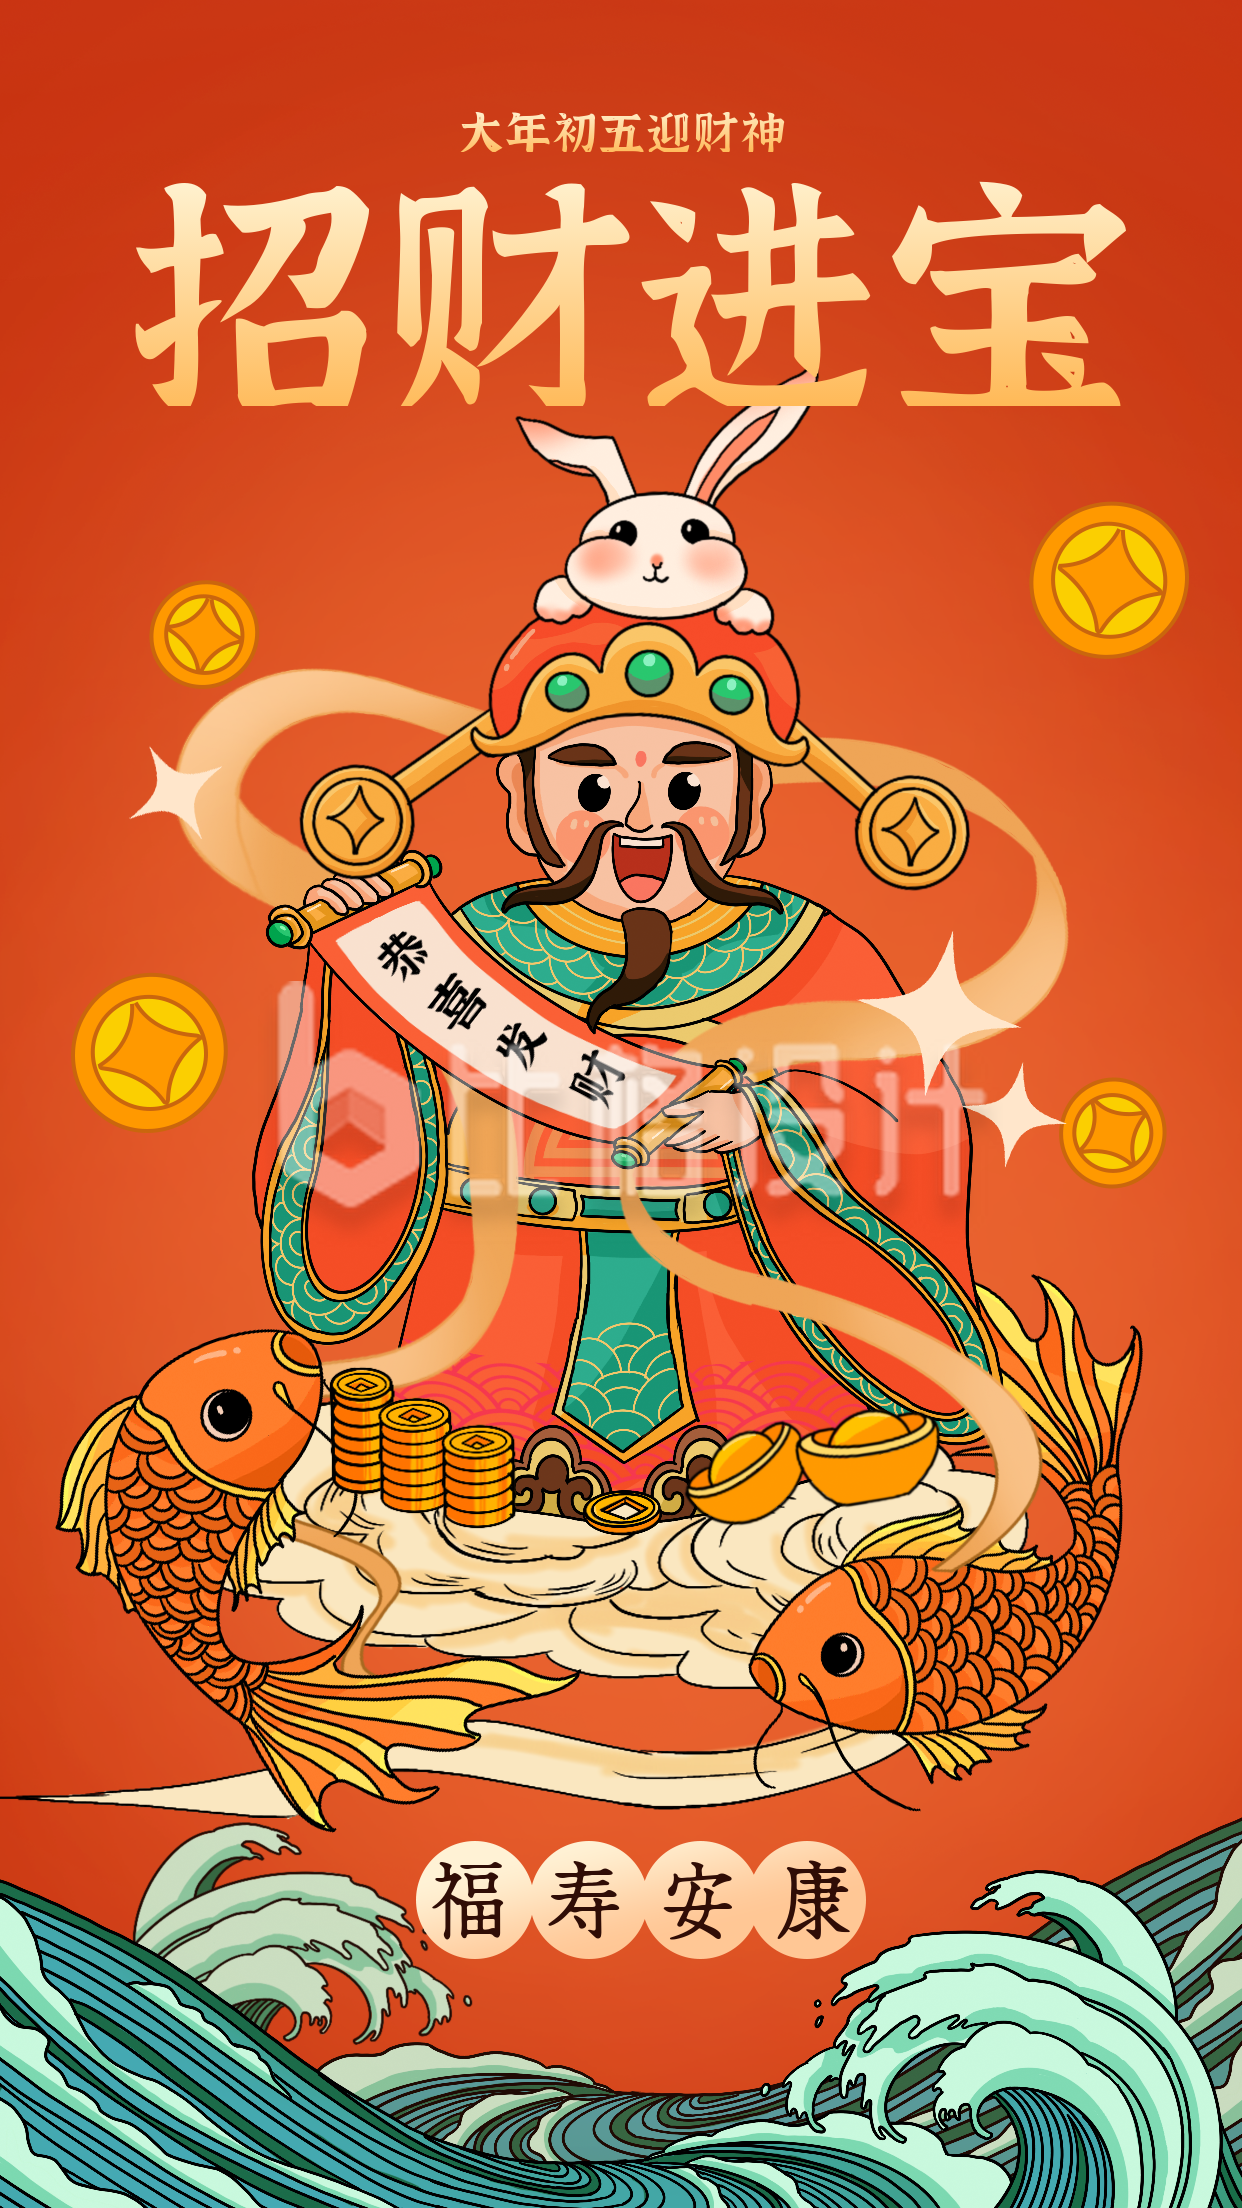 橙色手绘风财神爷宣传手机海报